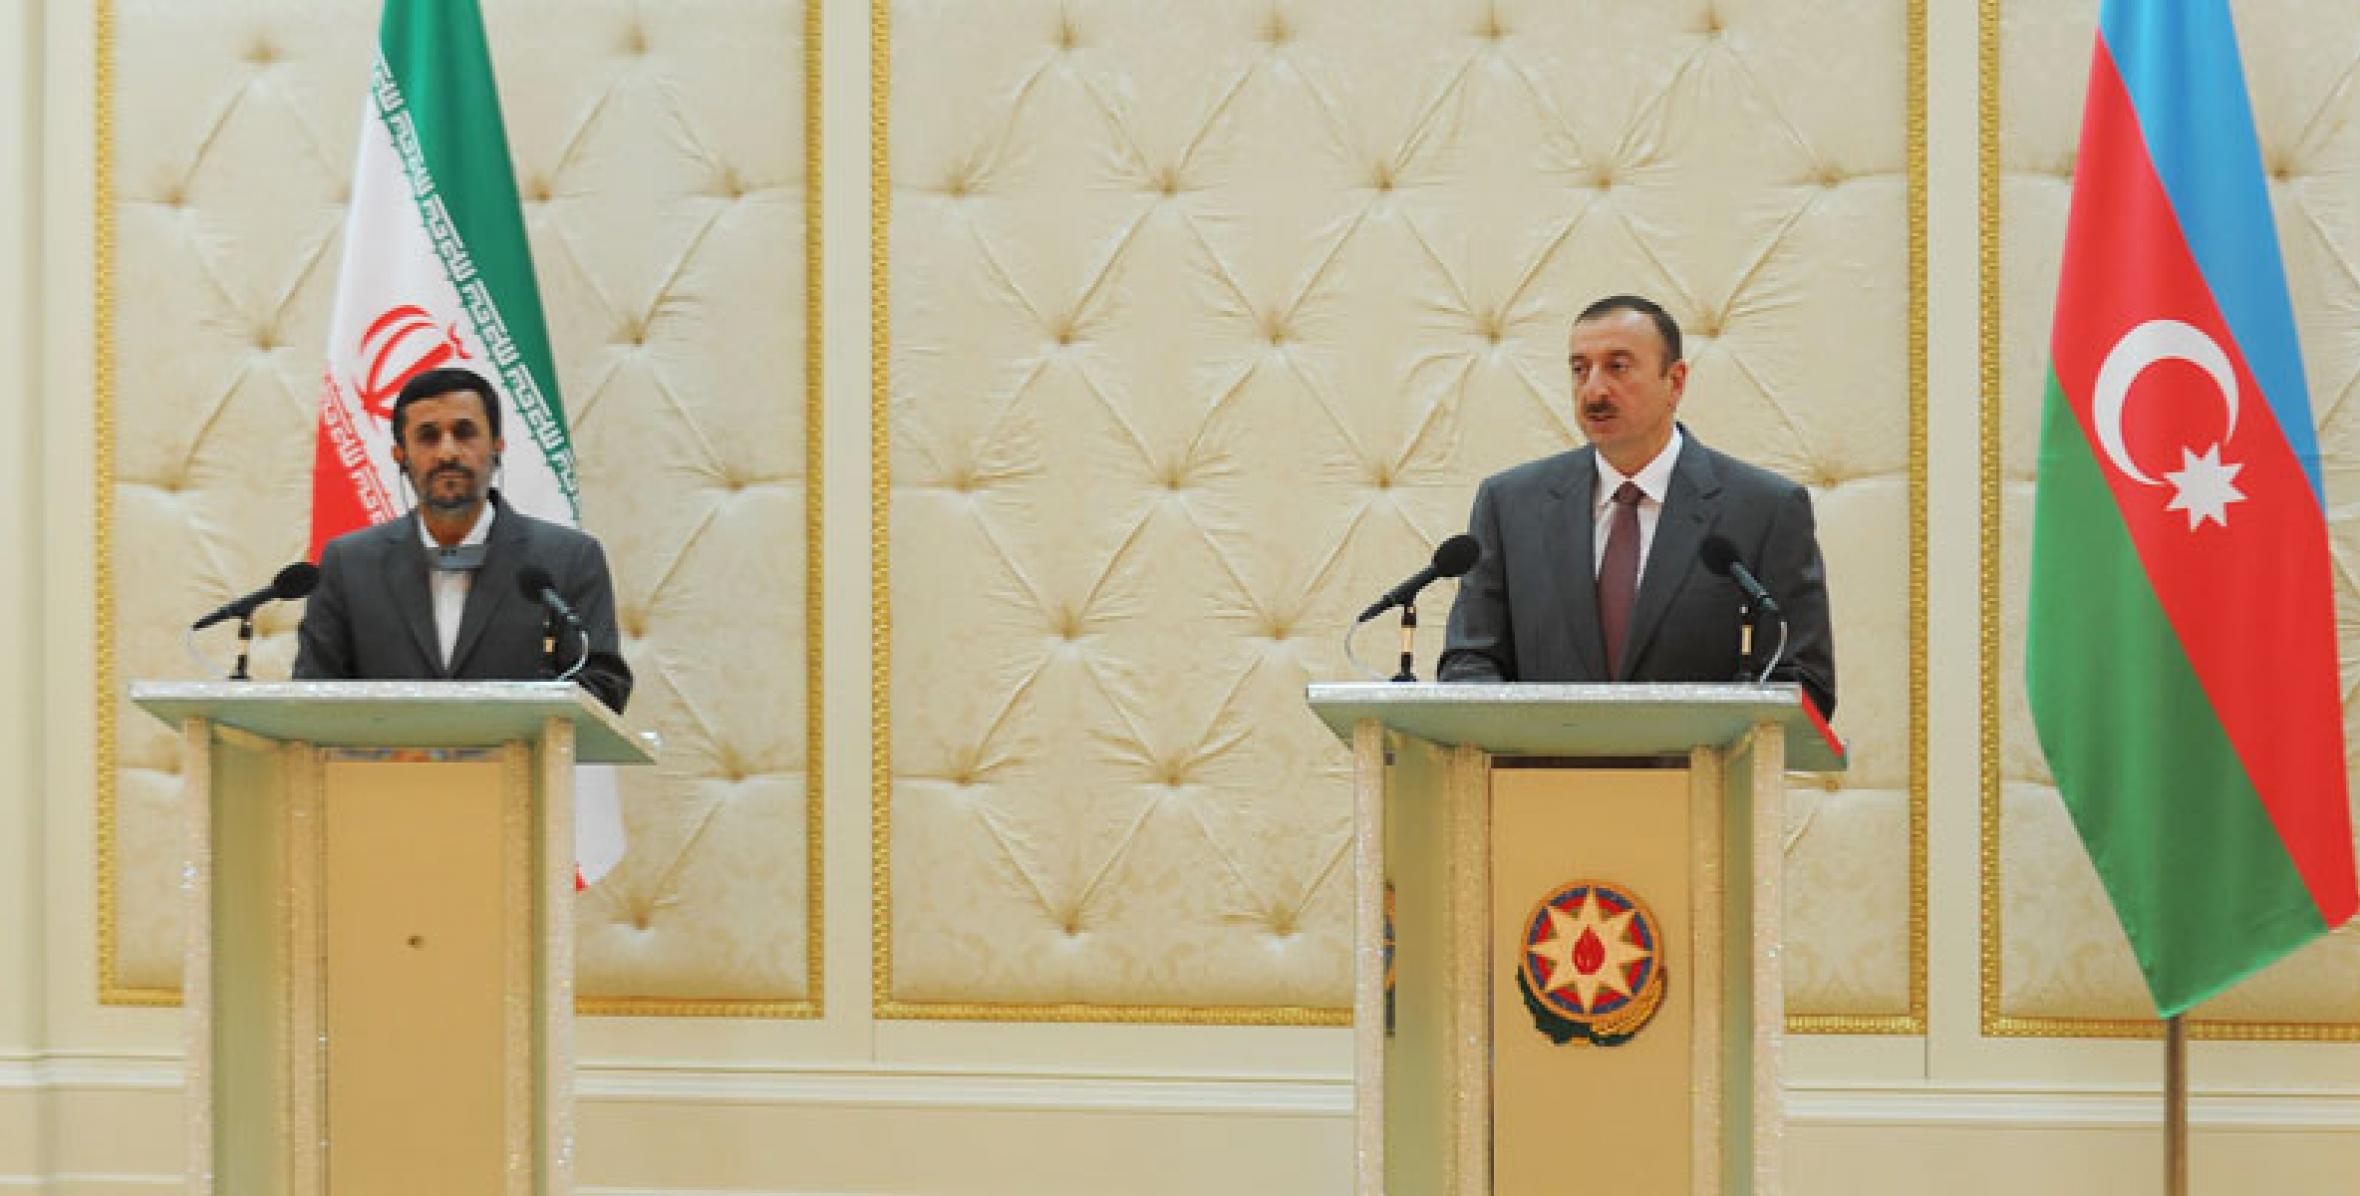 Ильхам Алиев и Президент Ирана Махмуд Ахмадинежад выступили с заявлениями для печати